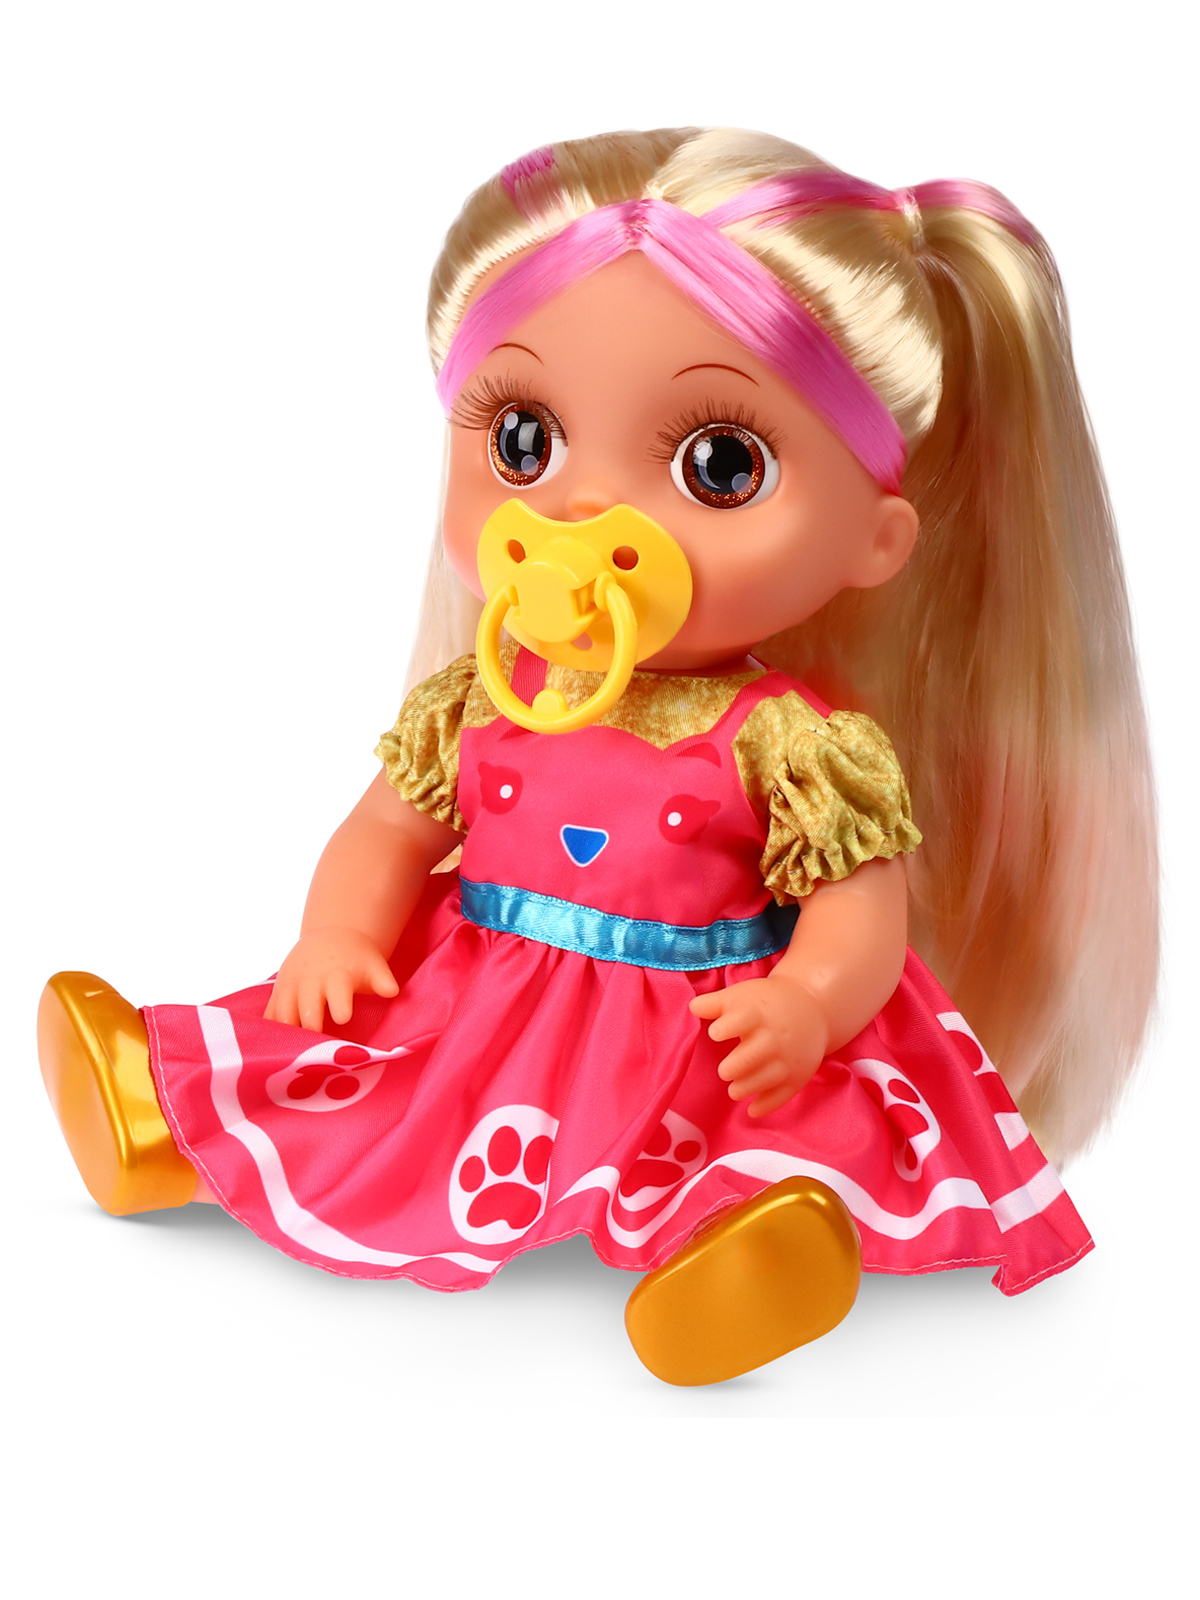 Кукла AMORE BELLO С розовыми волосами бутылочка желтый горшок соска JB0211646 - фото 9